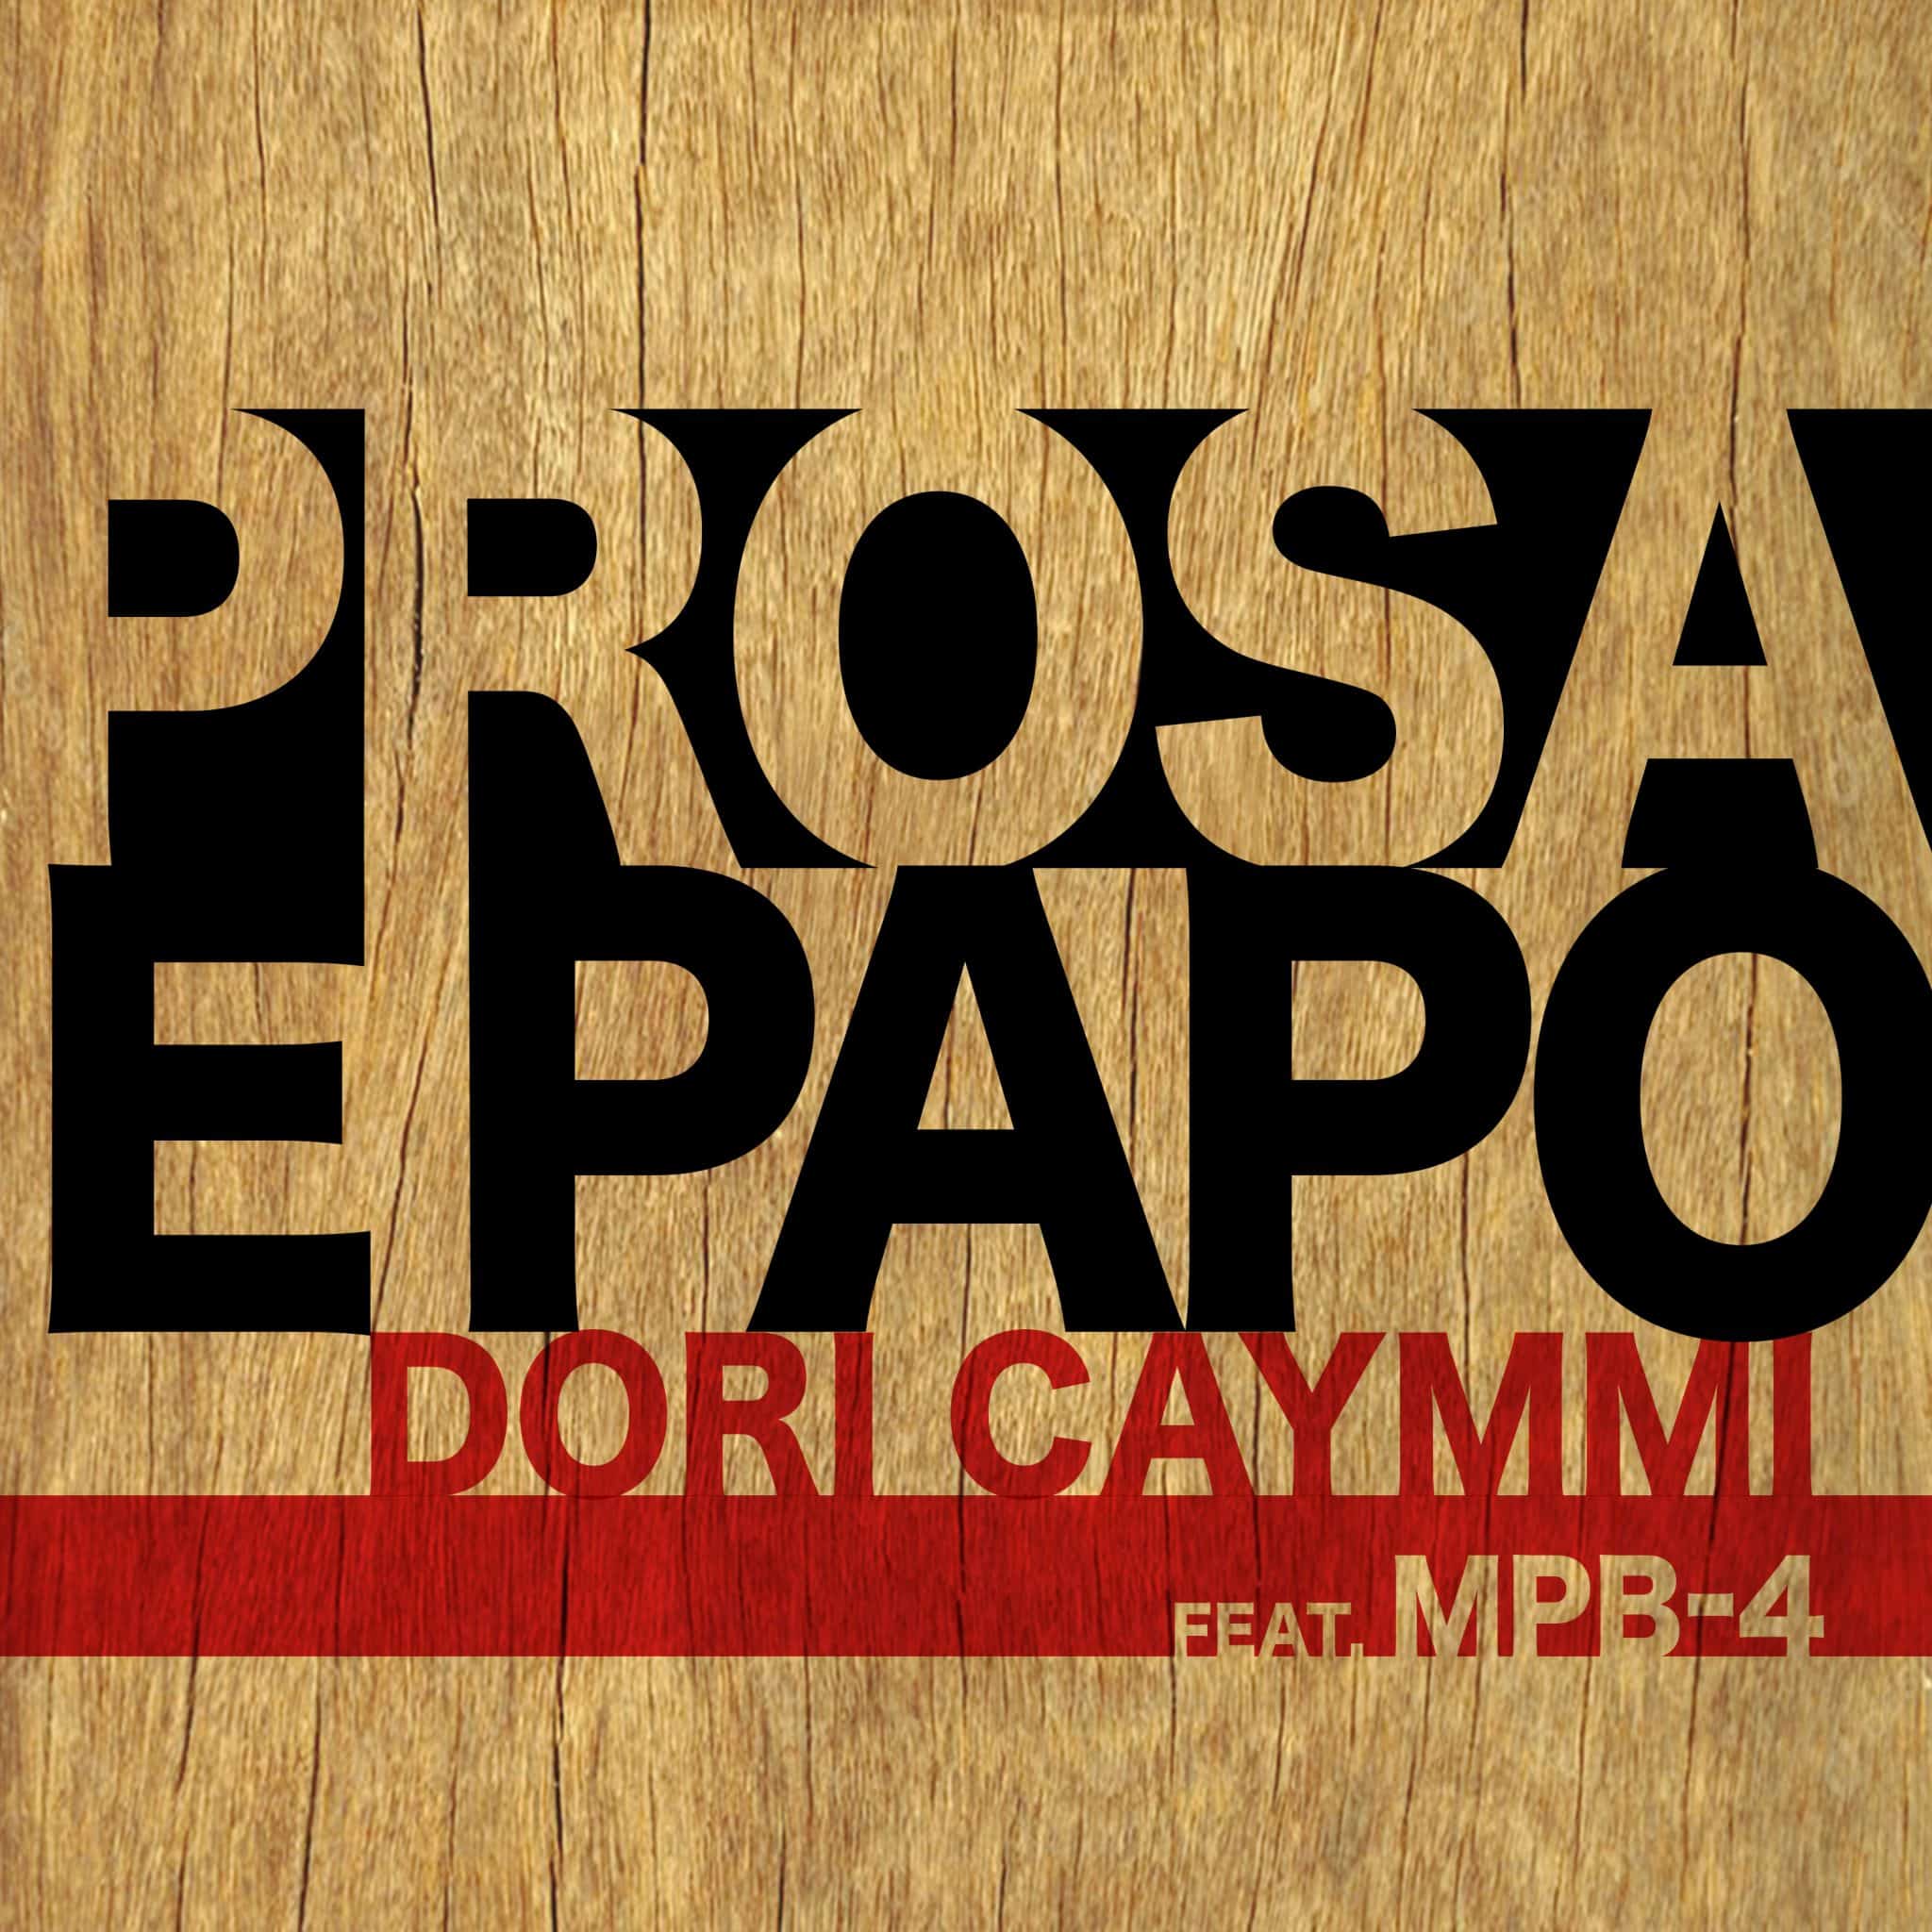 revistaprosaversoearte.com - Dori Caymmi lança single inédito e anuncia novo álbum